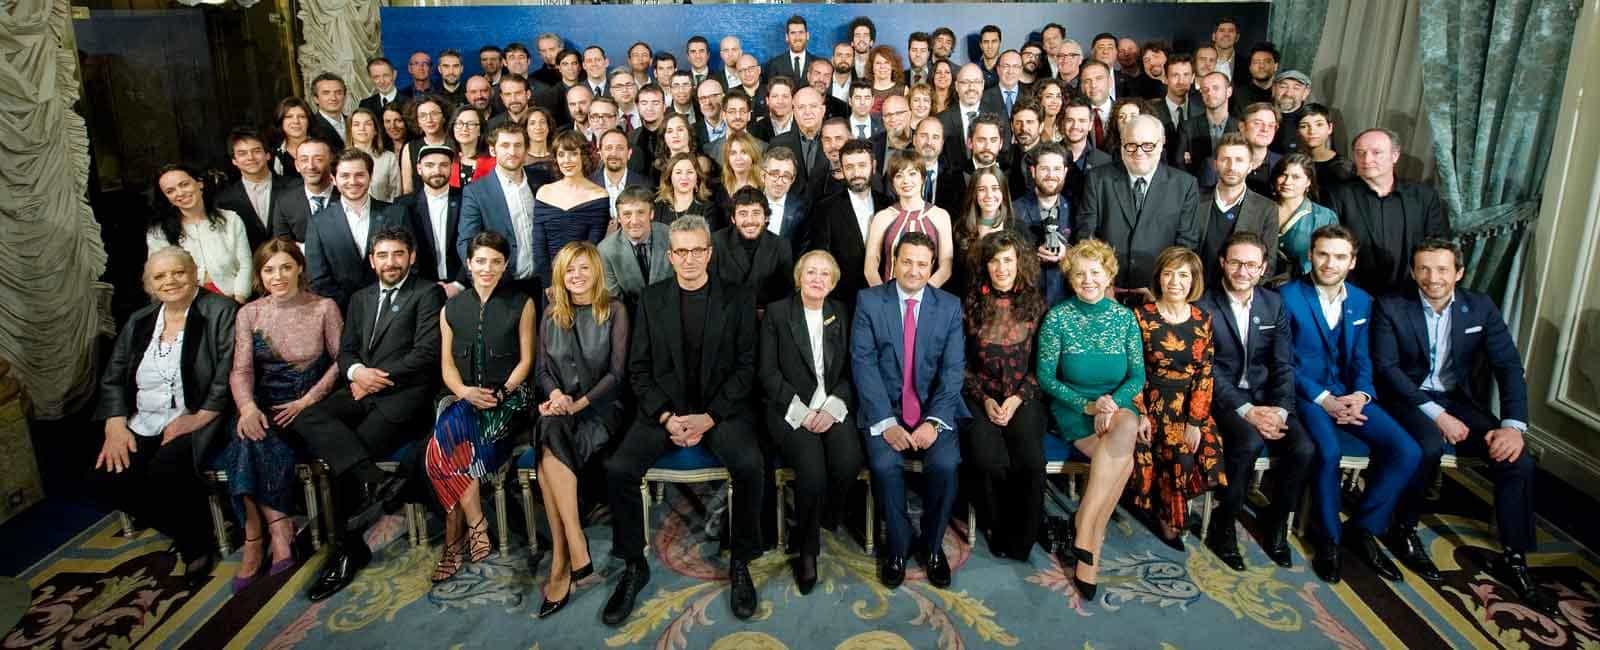 Nominados 31º Edición de los Premios Goya